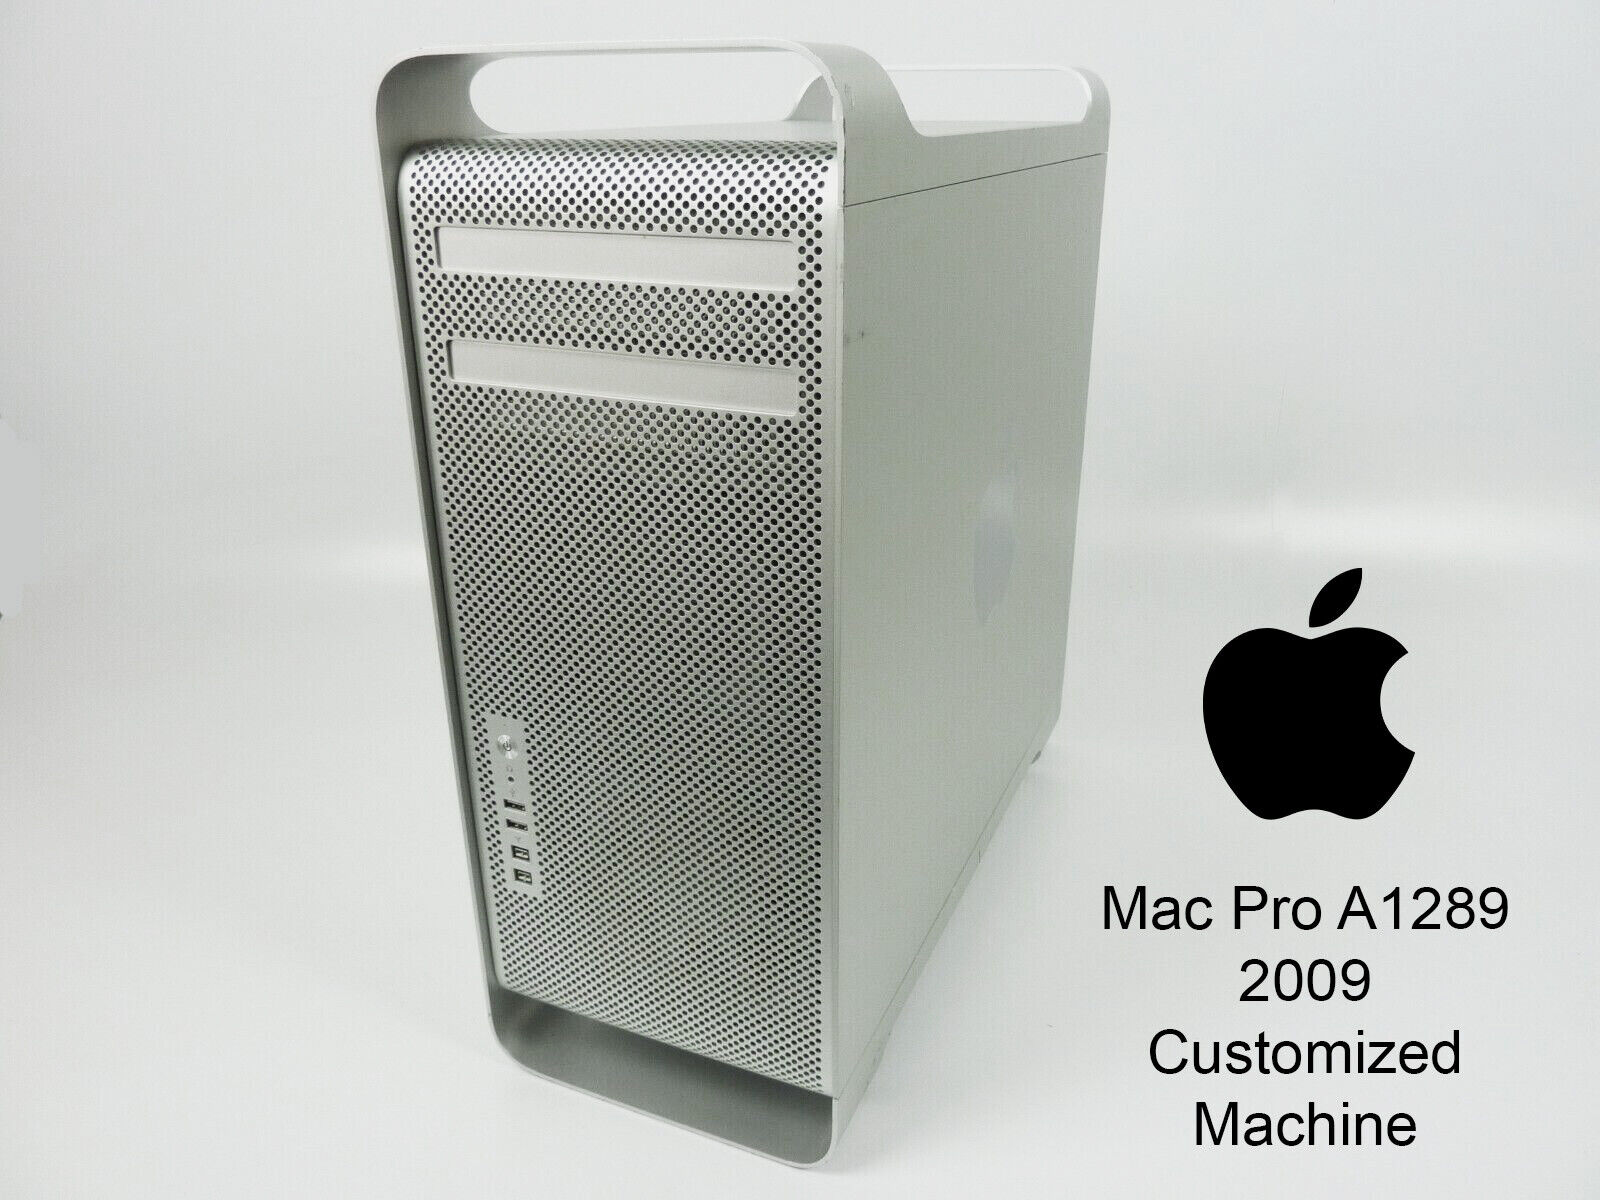 Apple Customized Mac Pro 2009 A1289 Quad - Eight Core 32-64GB RAM 500GB-1TB SSD